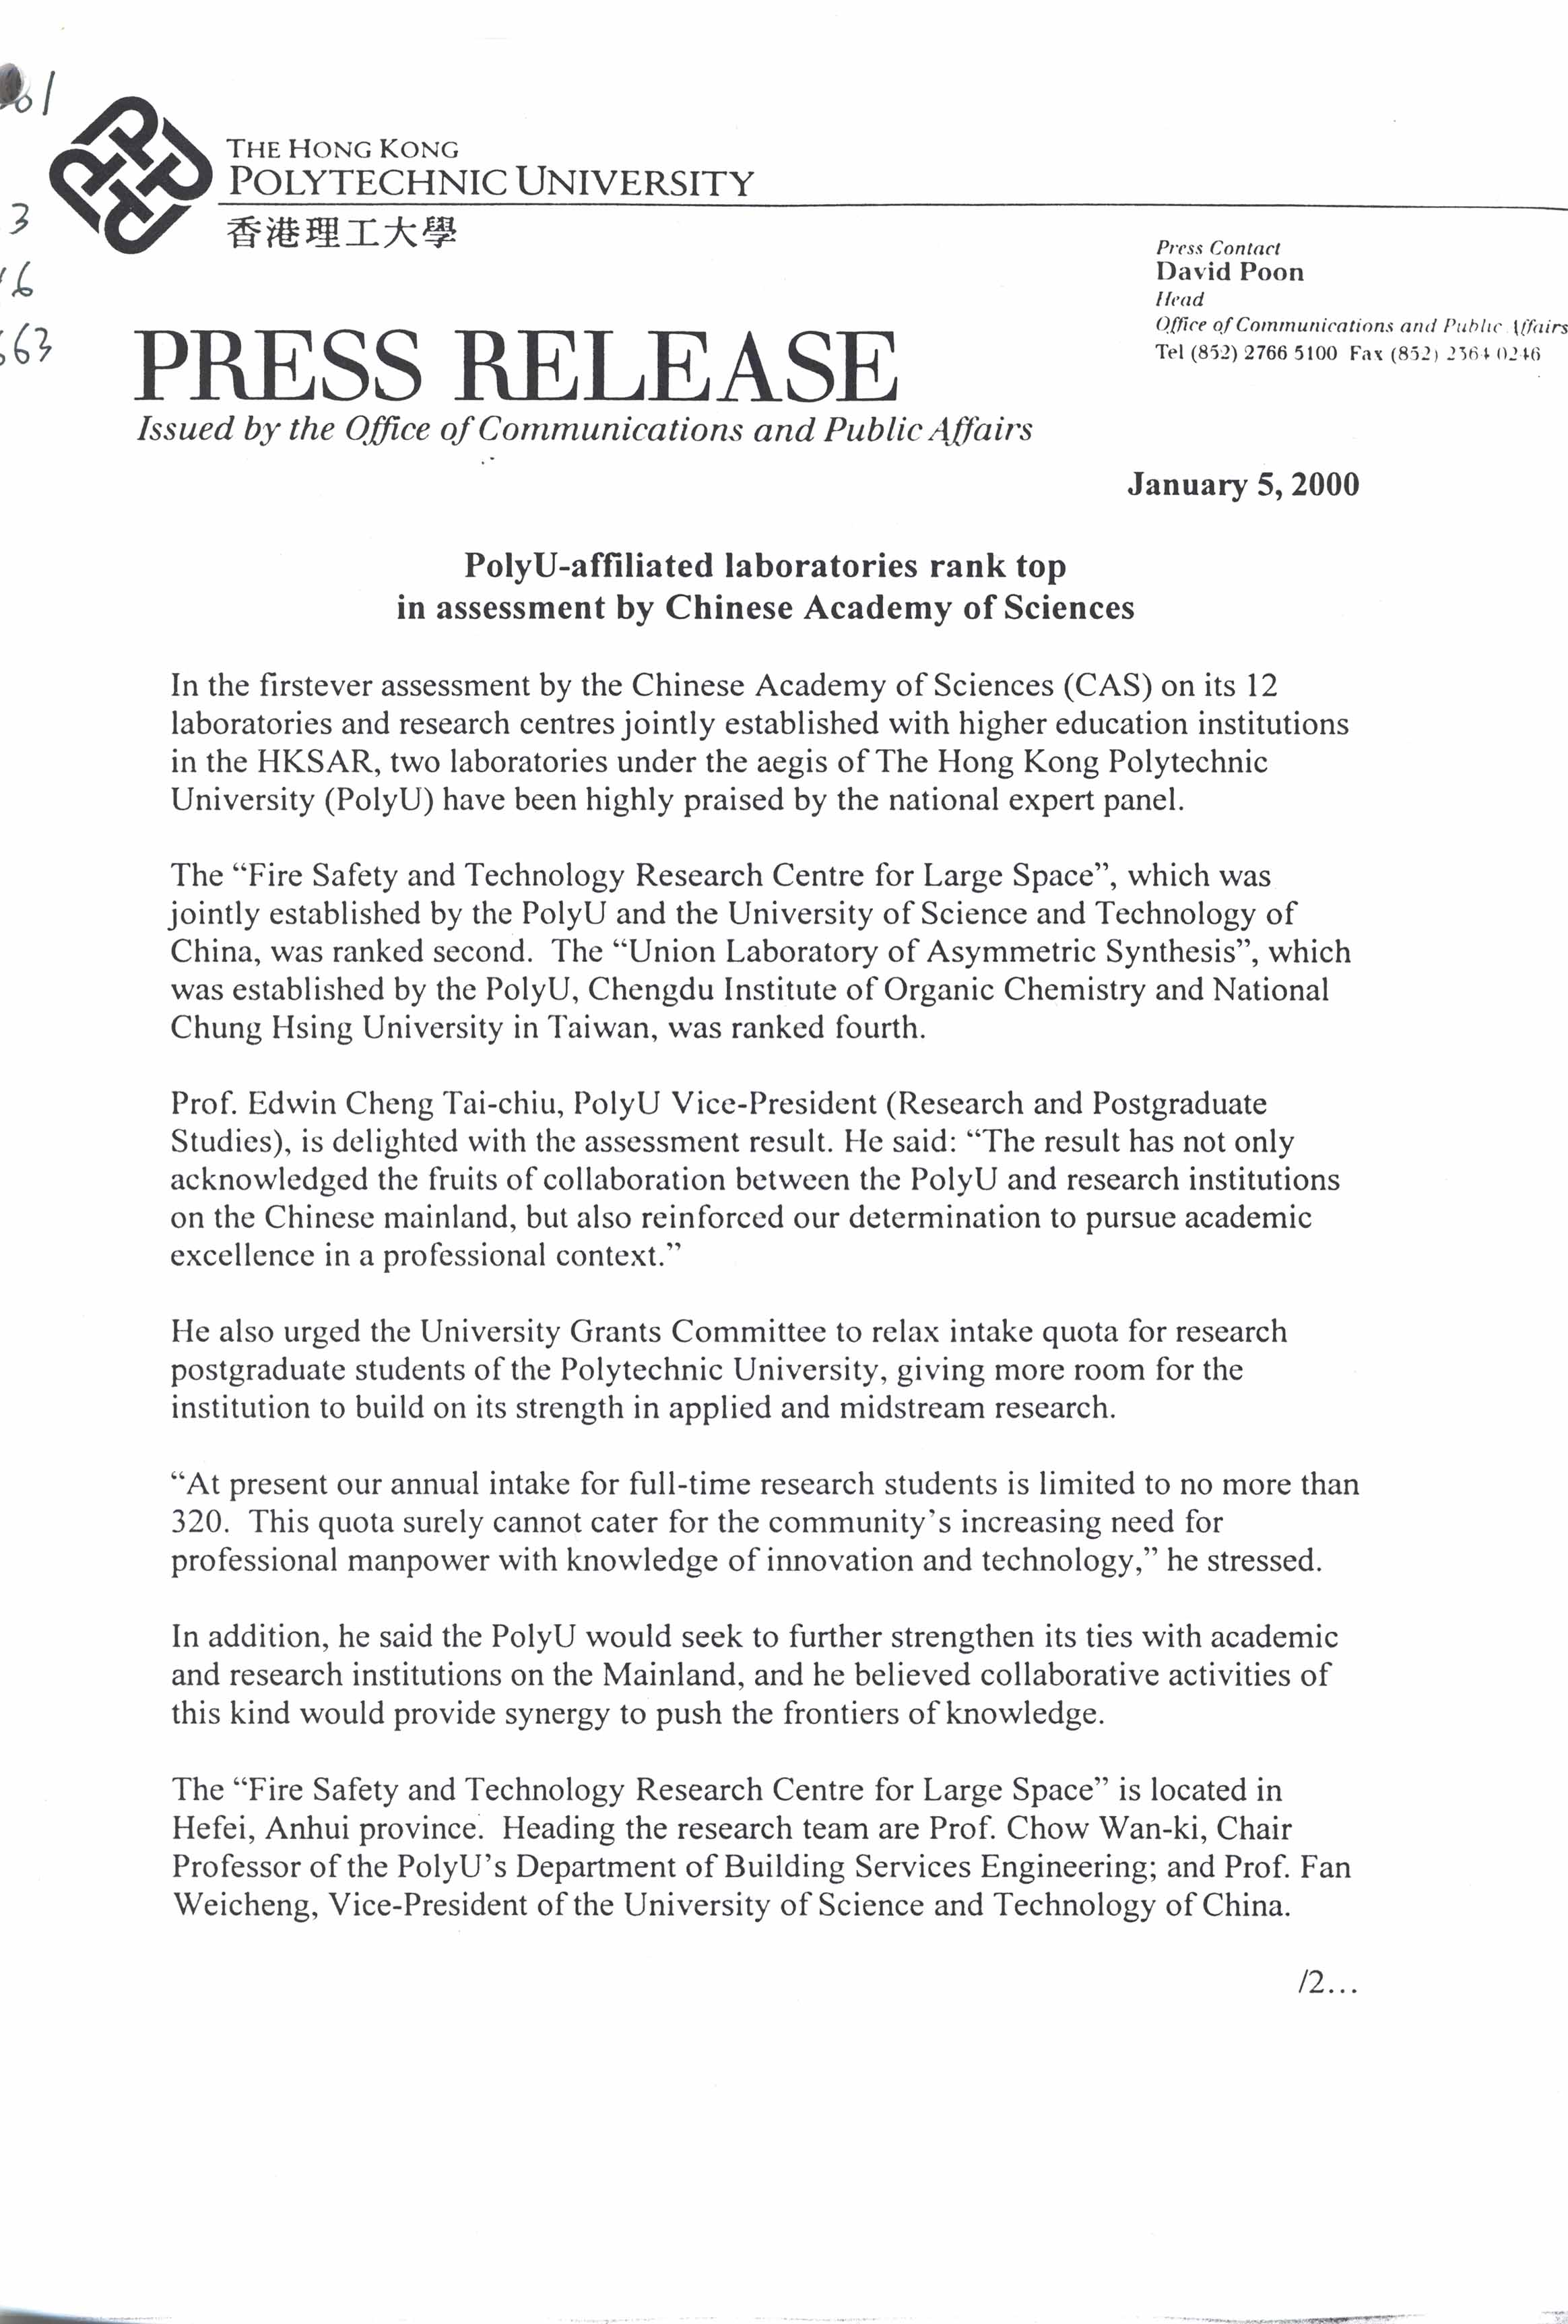 Press release [2000]